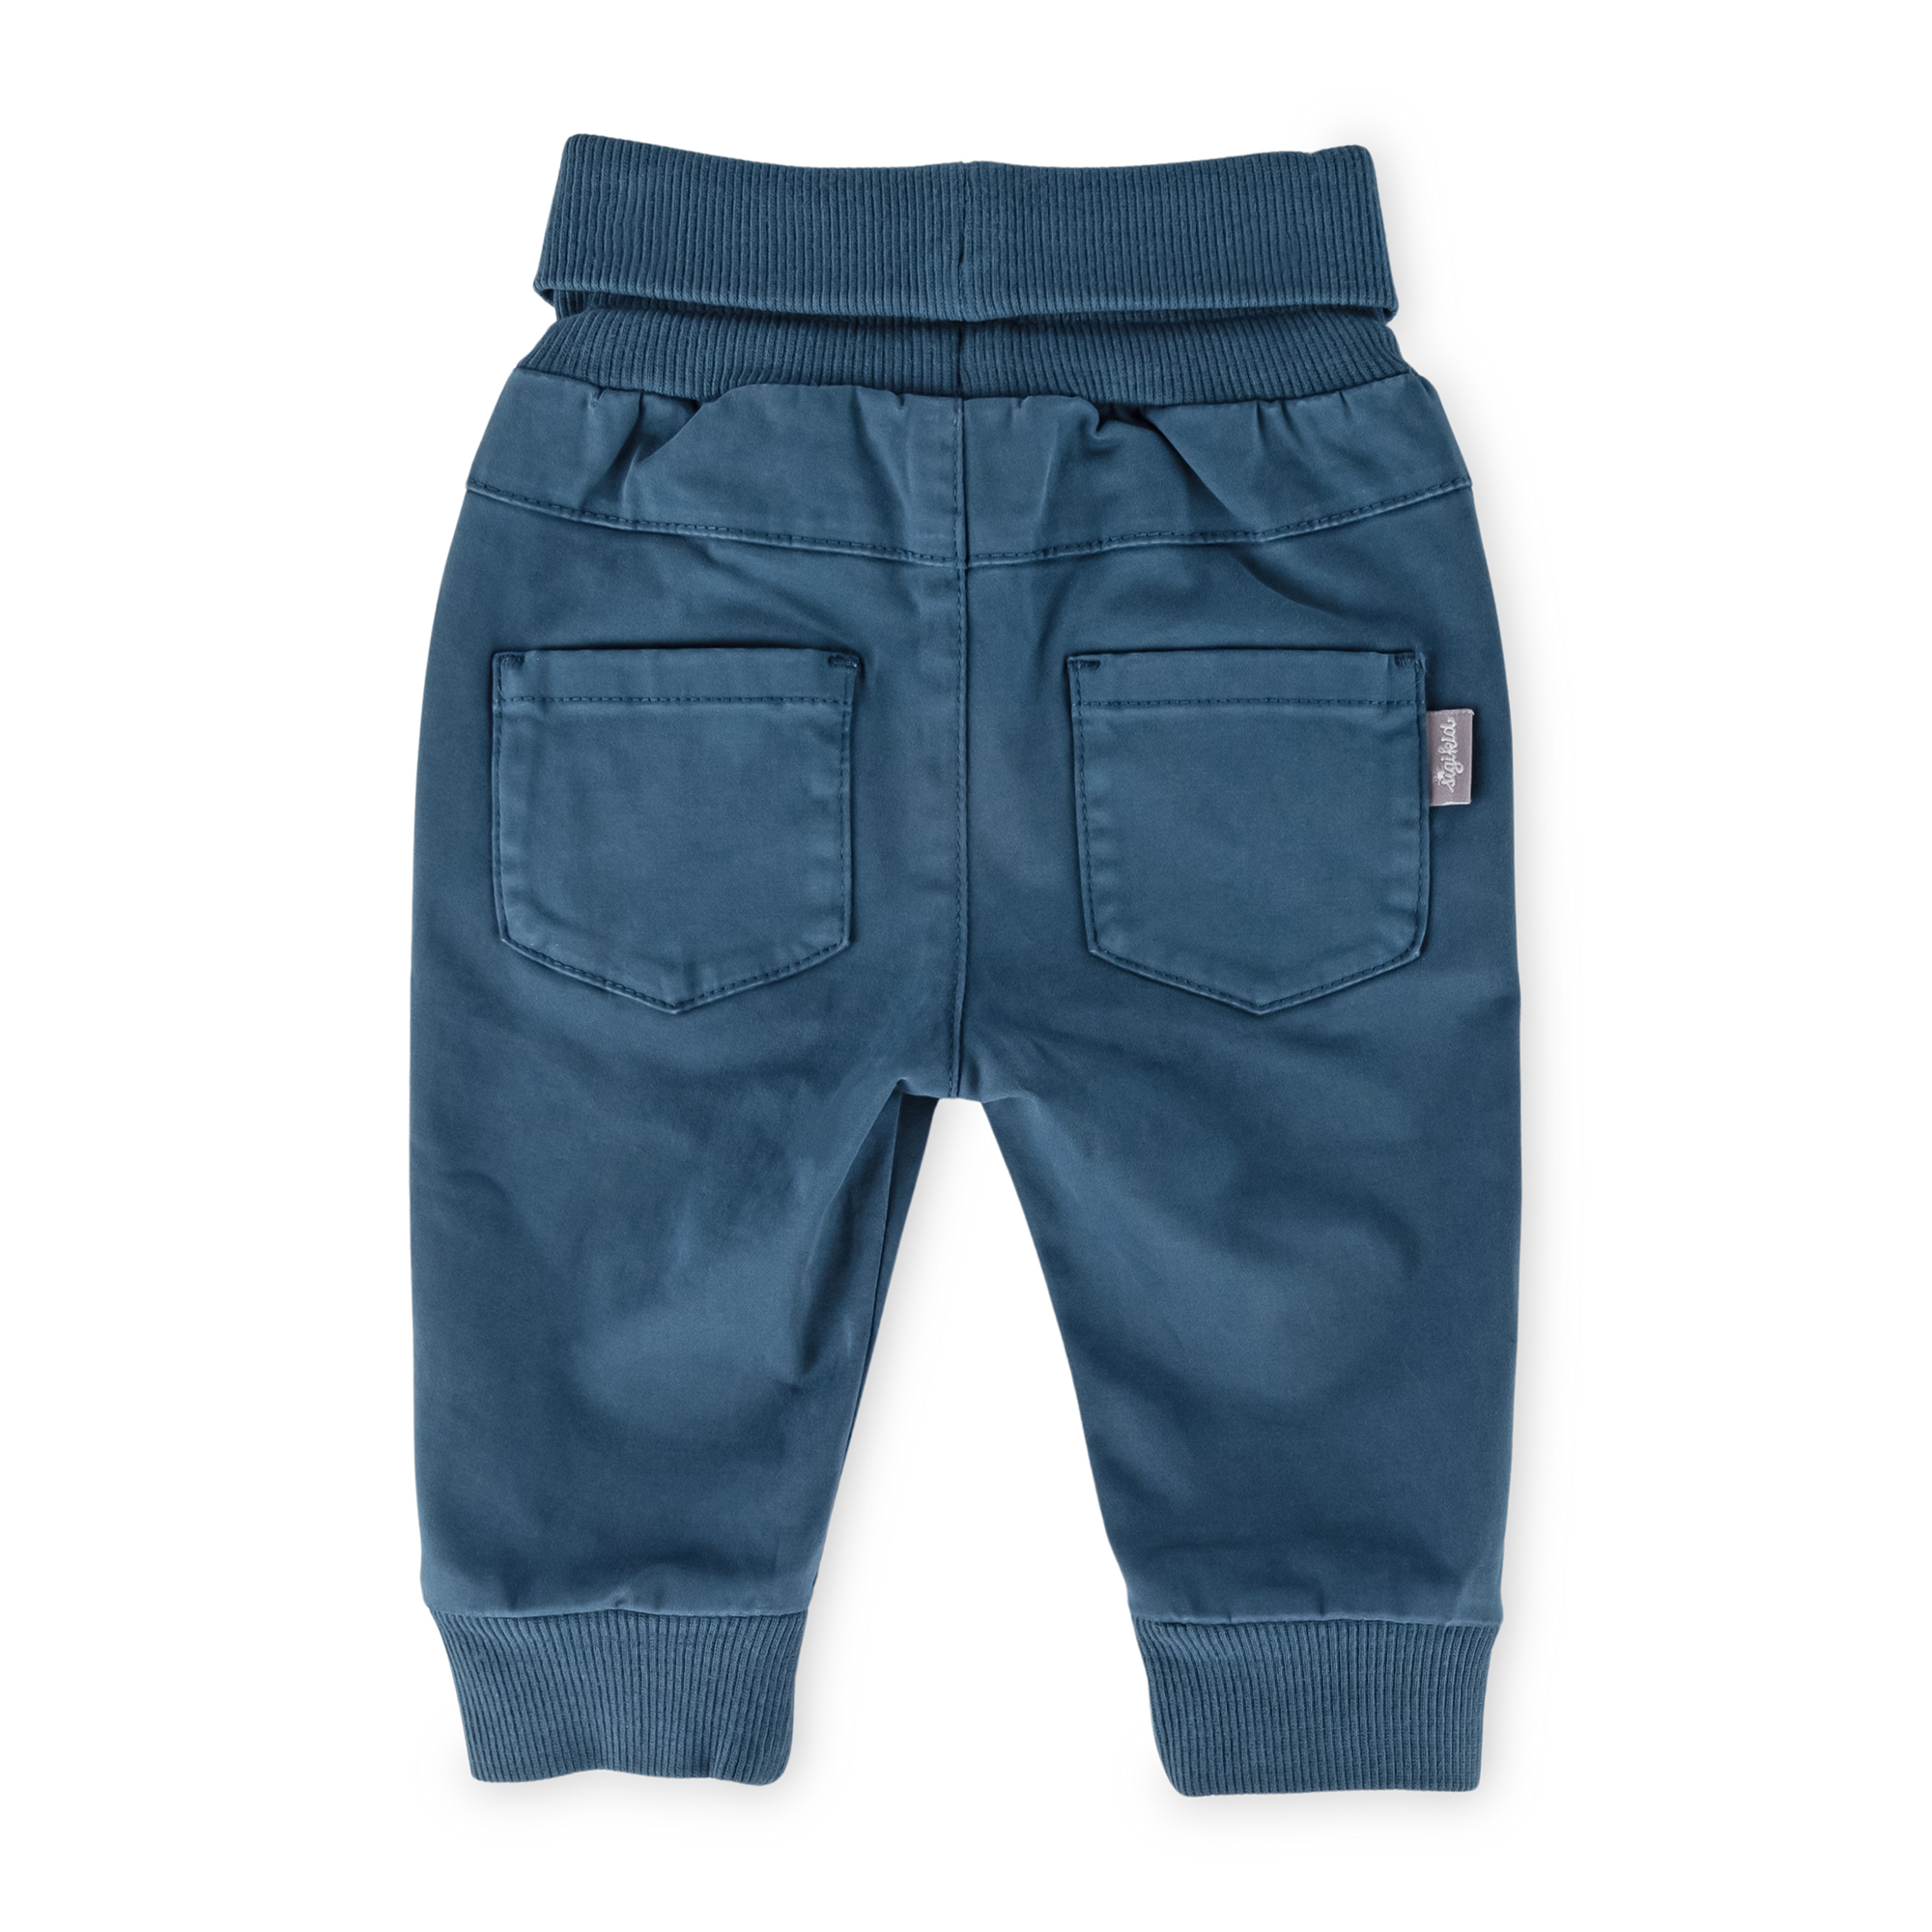 Baby rib knit waist gabardine pants, dark teal blue